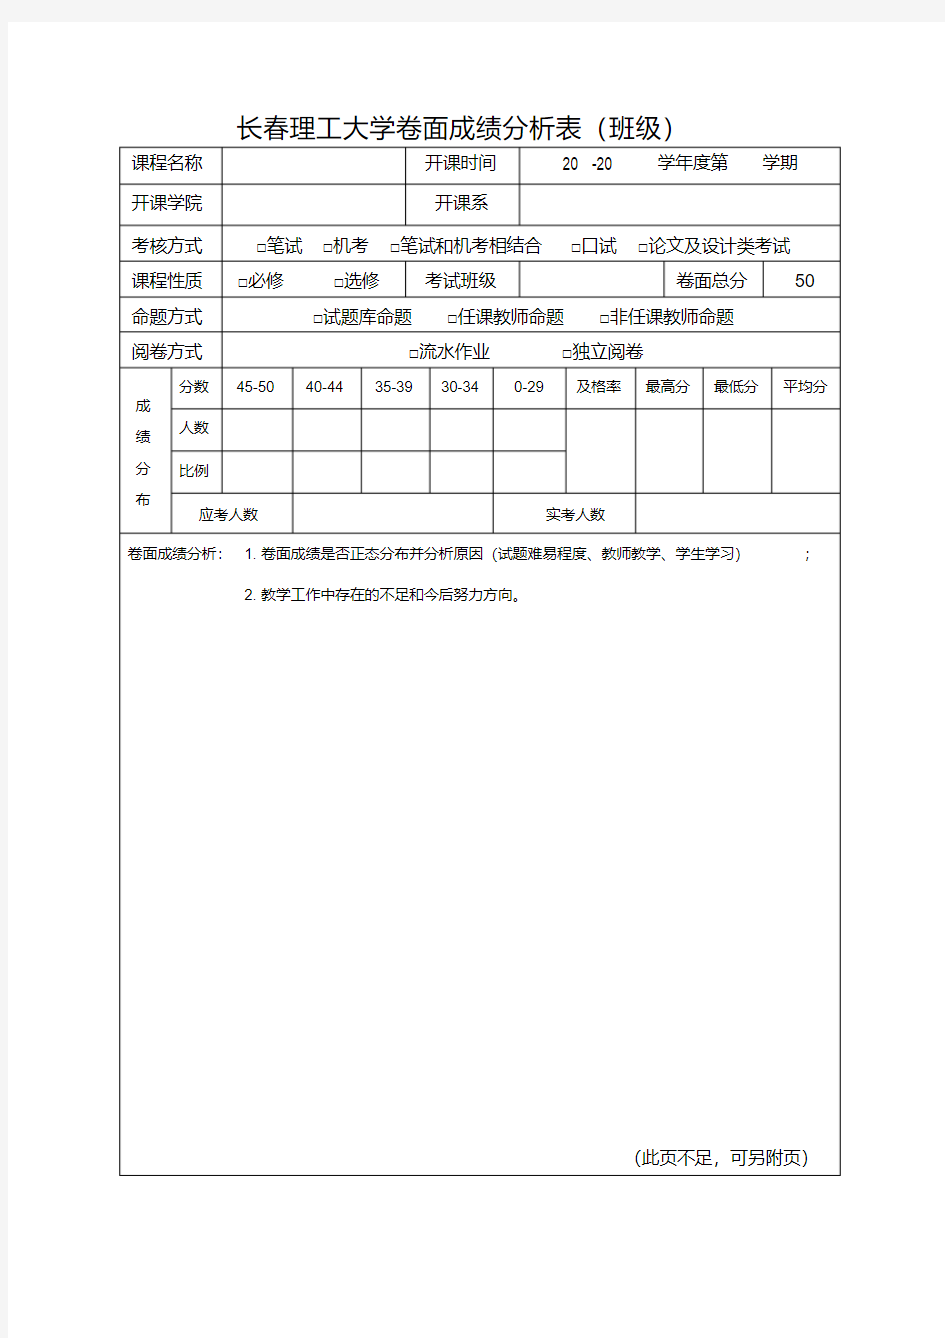 【精选】长春理工大学卷面成绩分析表(班级)_28530